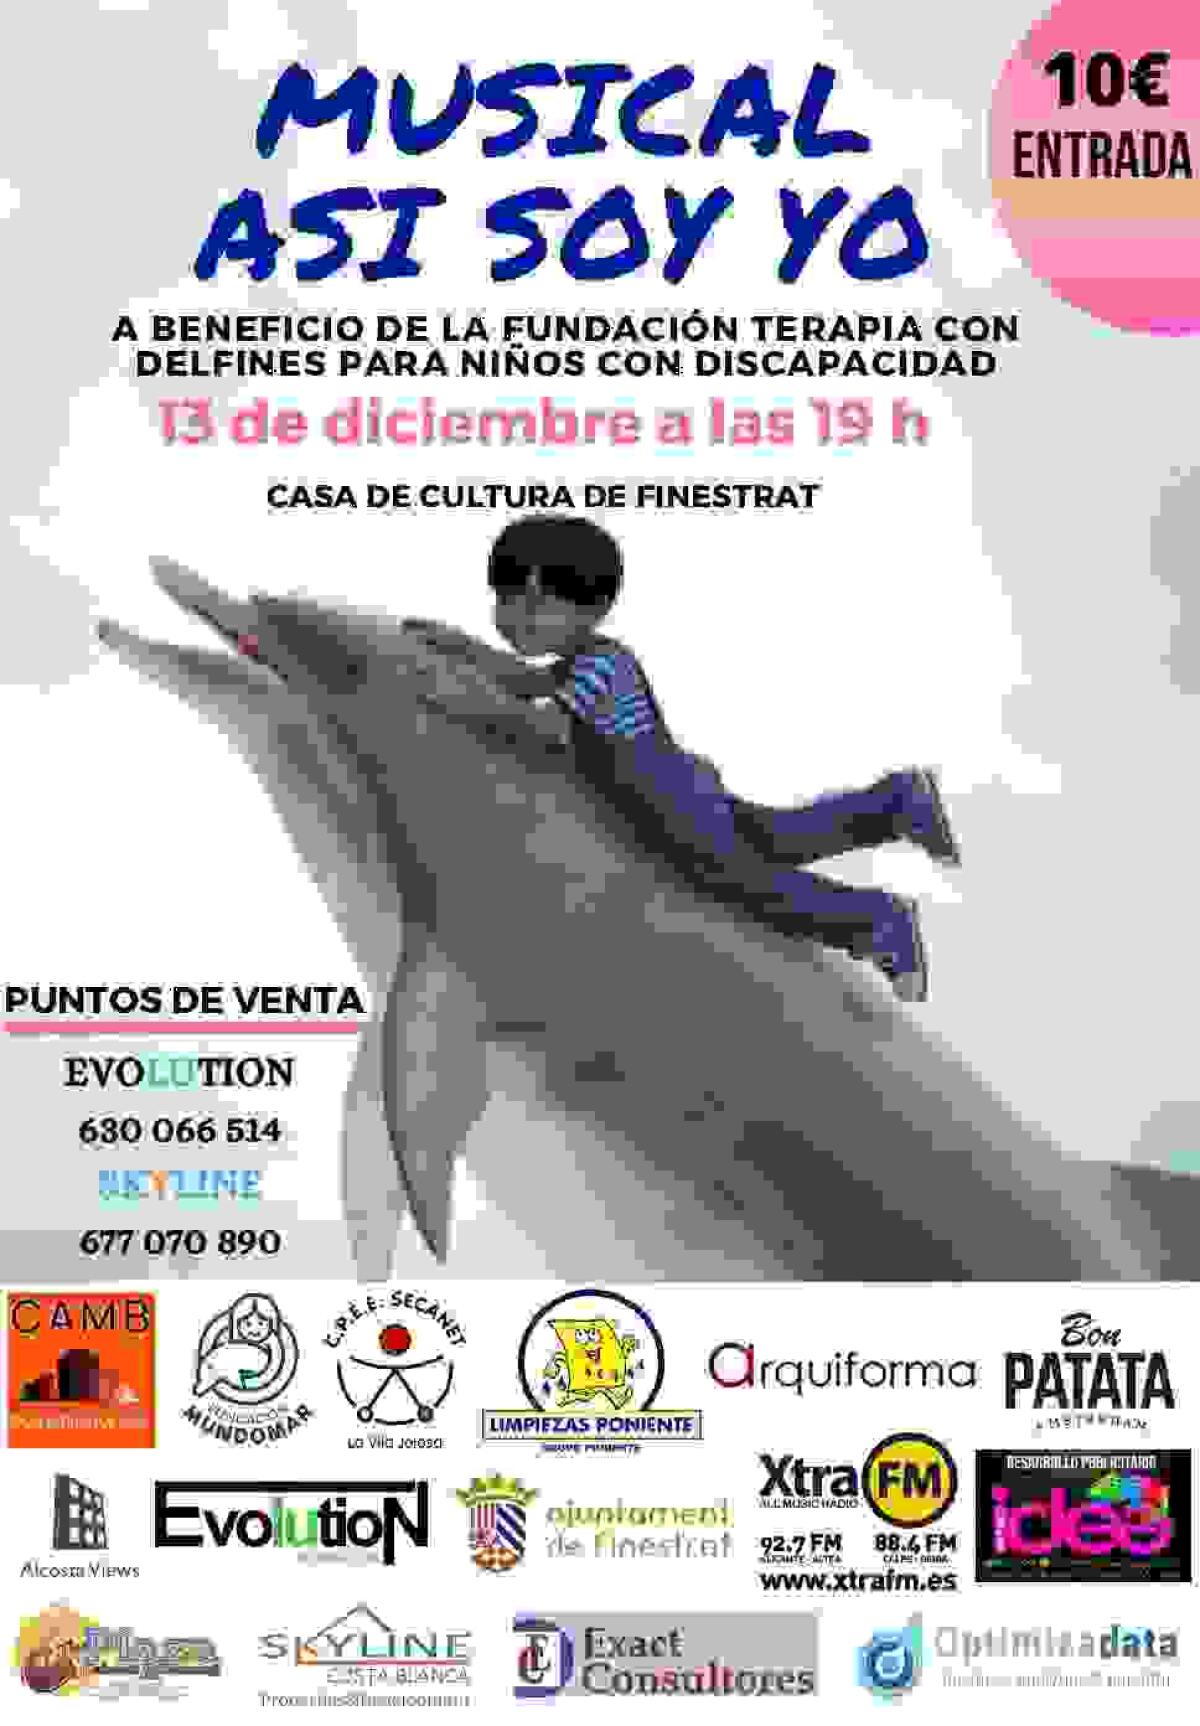 La Casa de Cultura de Finestrat acoge mañana el musical solidario “Así soy yo” a beneficio de la fundación terapia con delfines 